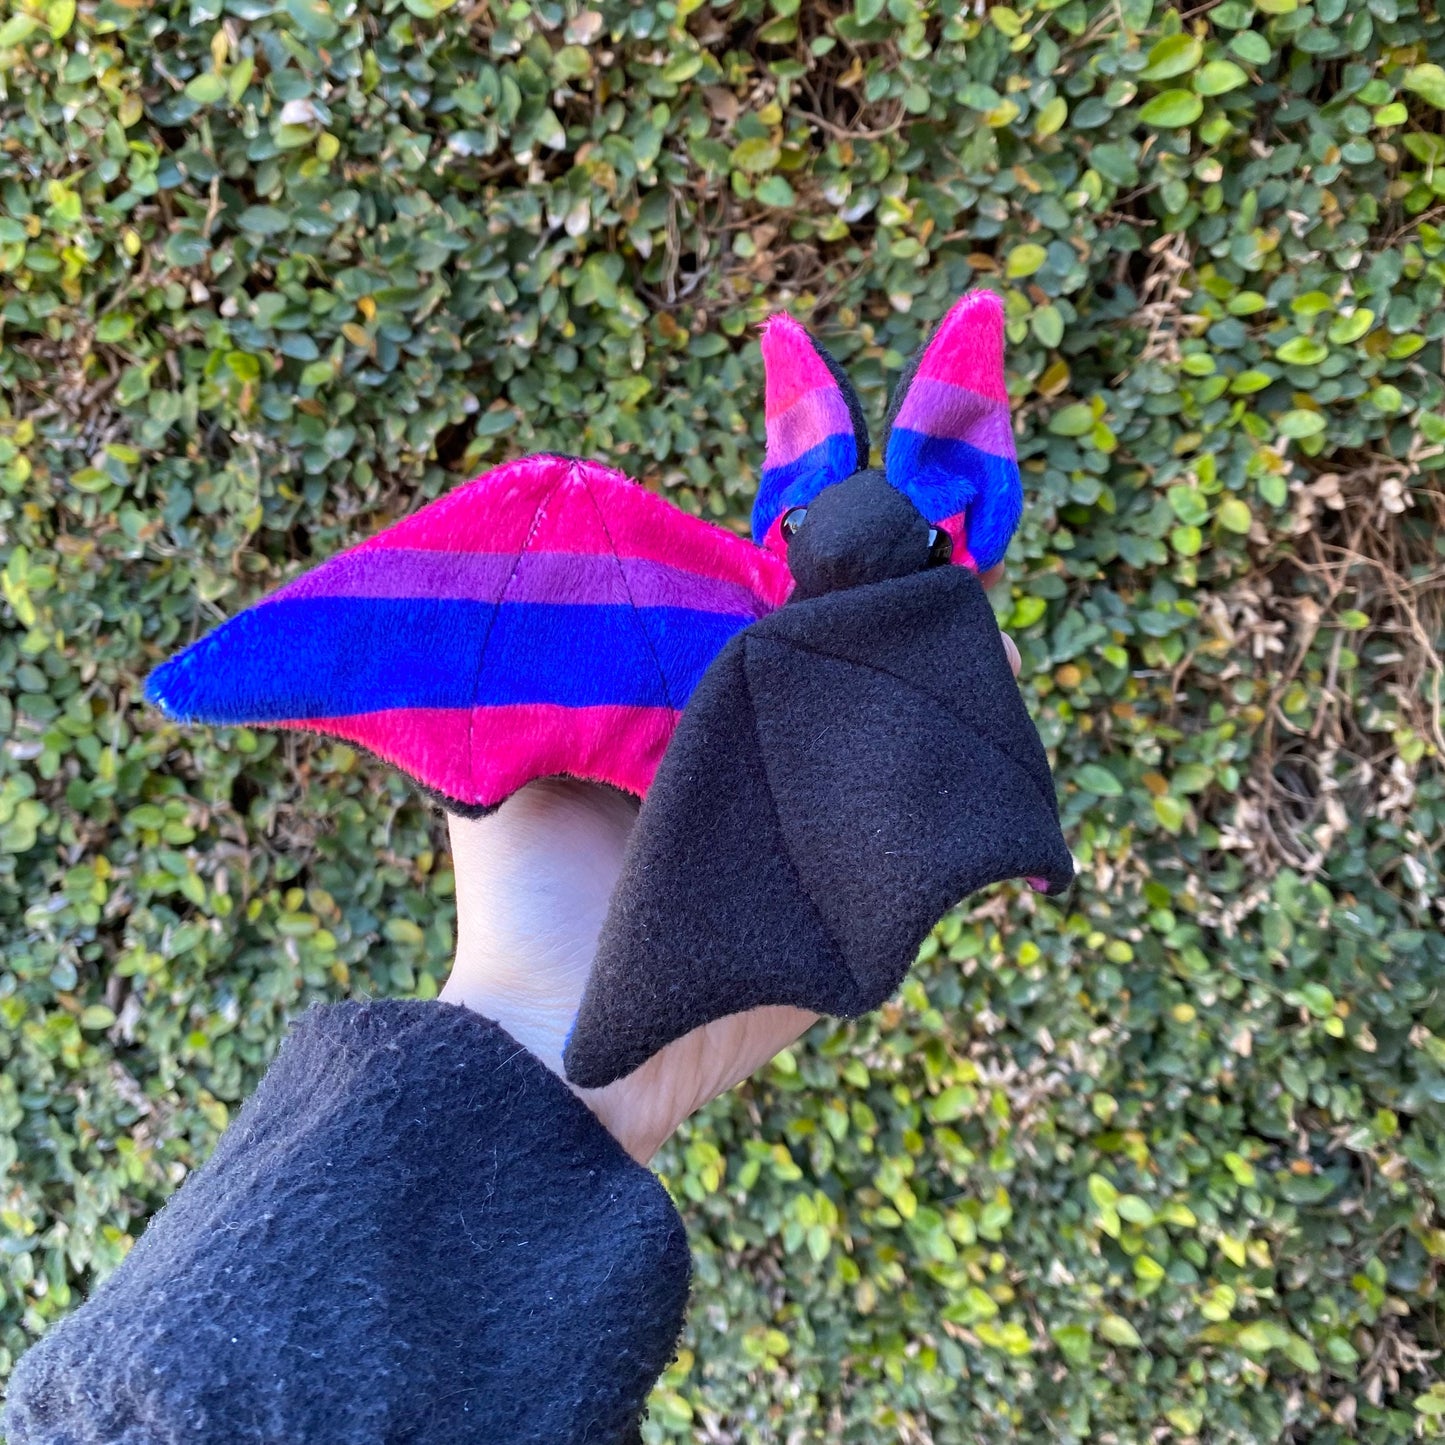 Bisexual Bat plushie